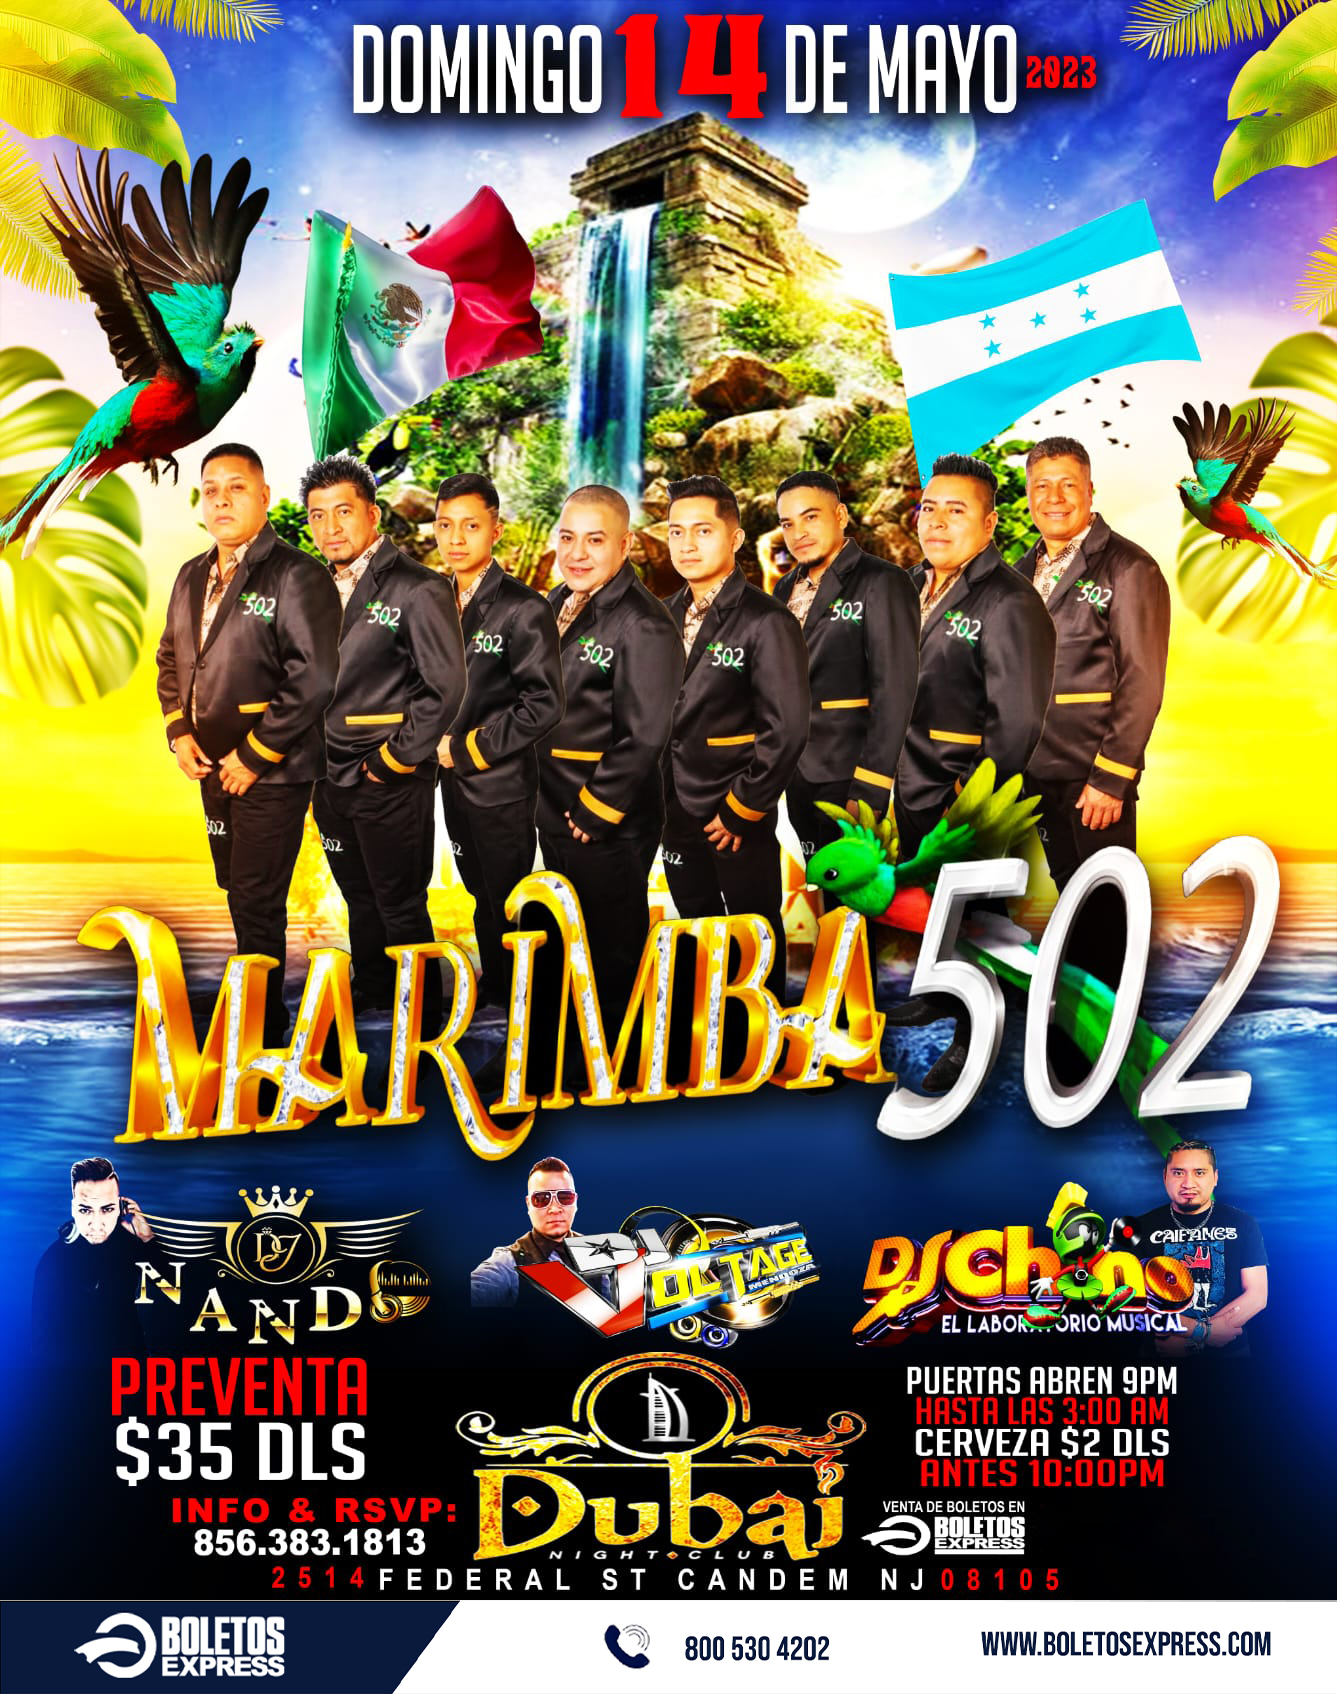 MARIMBA 502 Tickets - BoletosExpress